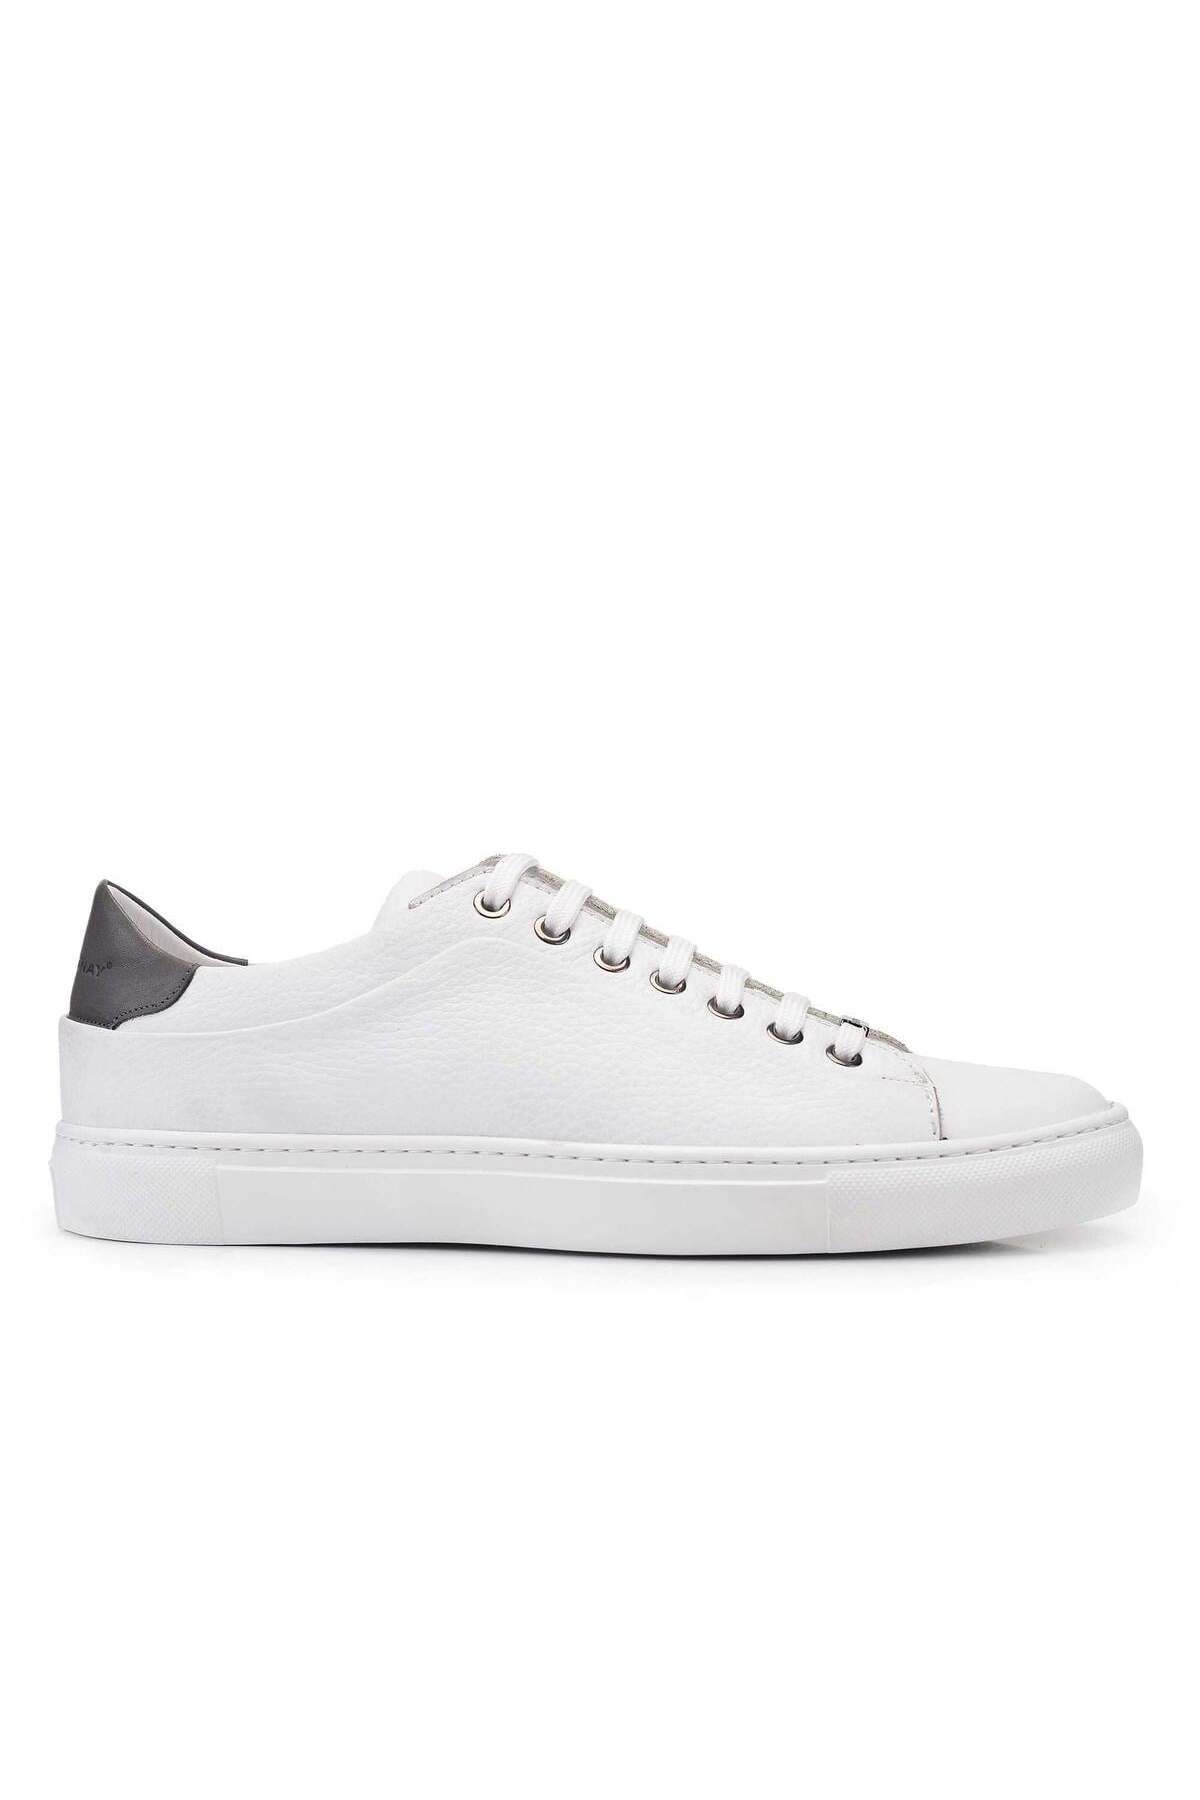 Nevzat Onay Beyaz Gri Sneaker Erkek Ayakkabı -11118-